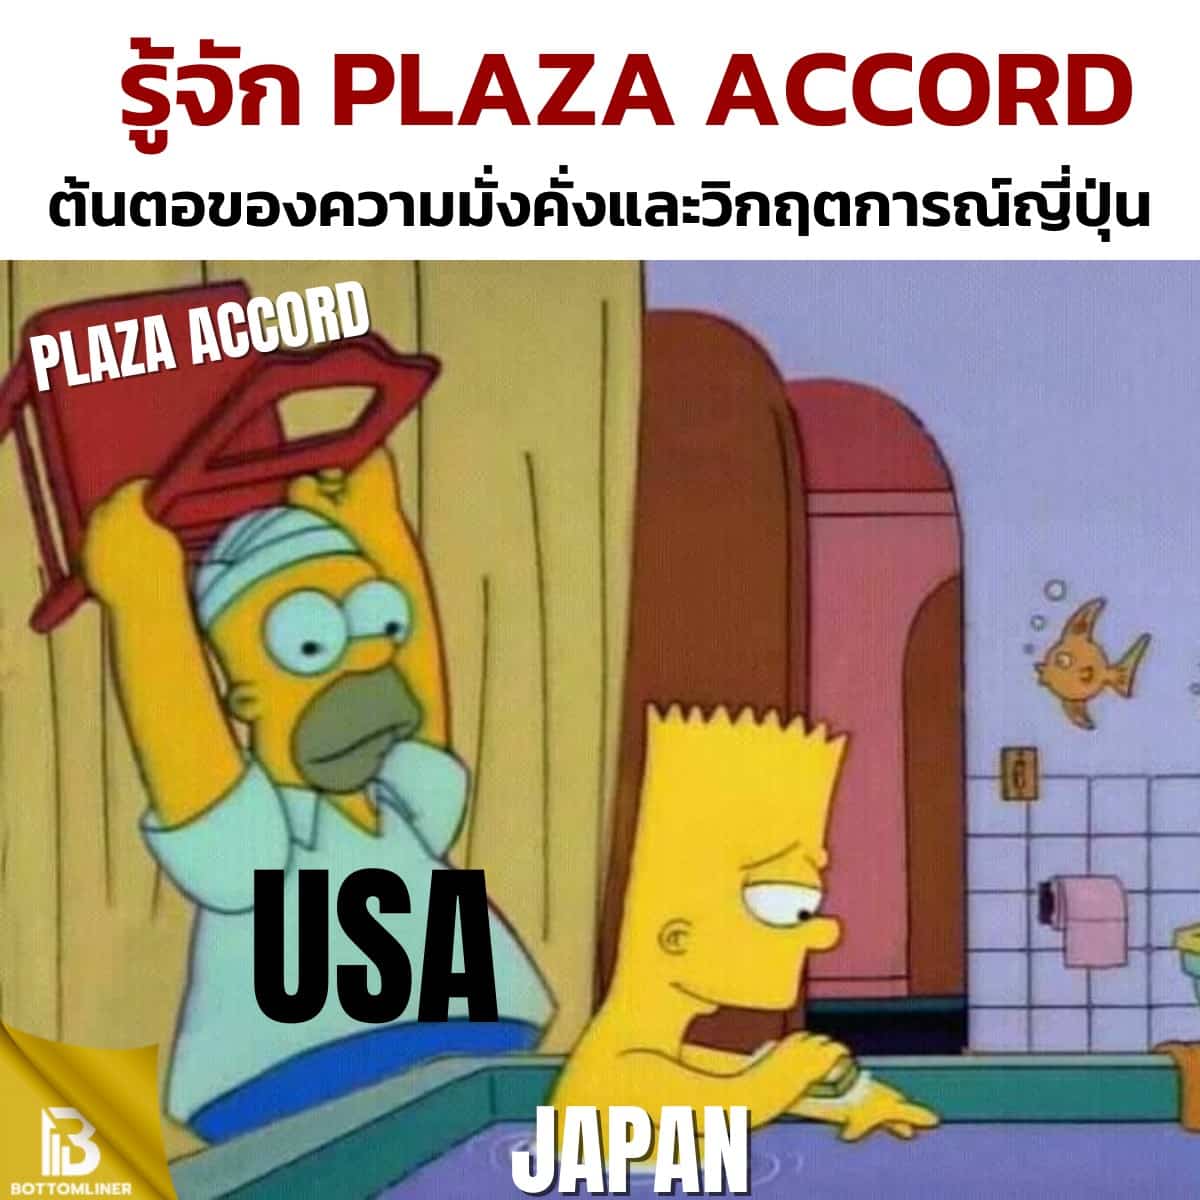 รู้จักเหตุการณ์ Plaza Accord ต้นต่อของความมั่งคั่งและวิกฤตการณ์ญี่ปุ่น